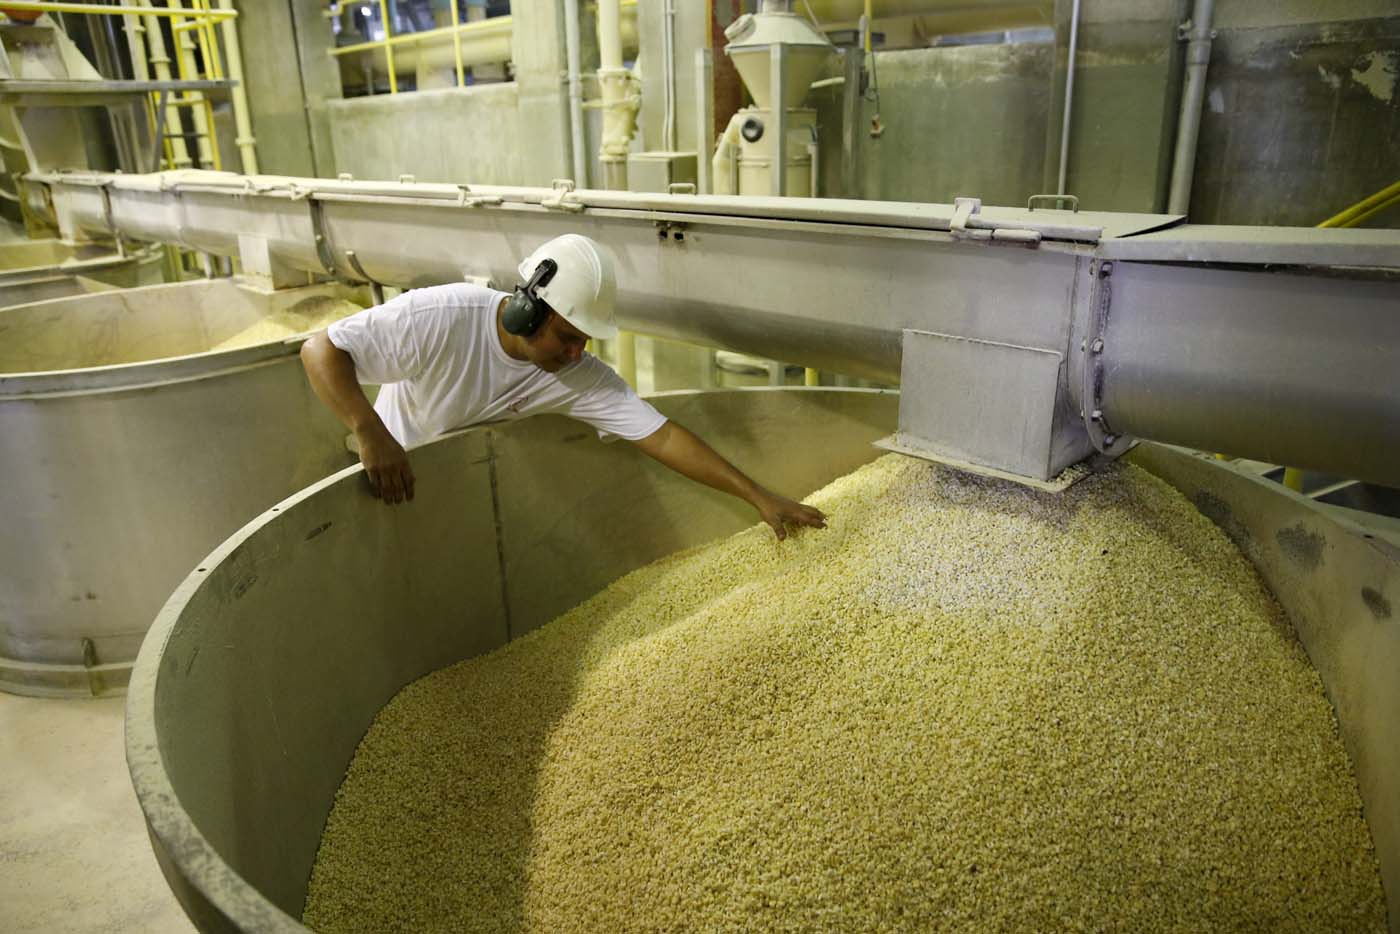 Comienza cosecha de maíz con unos precios fijados de manera inconsulta y arbitraria, dice Fedeagro